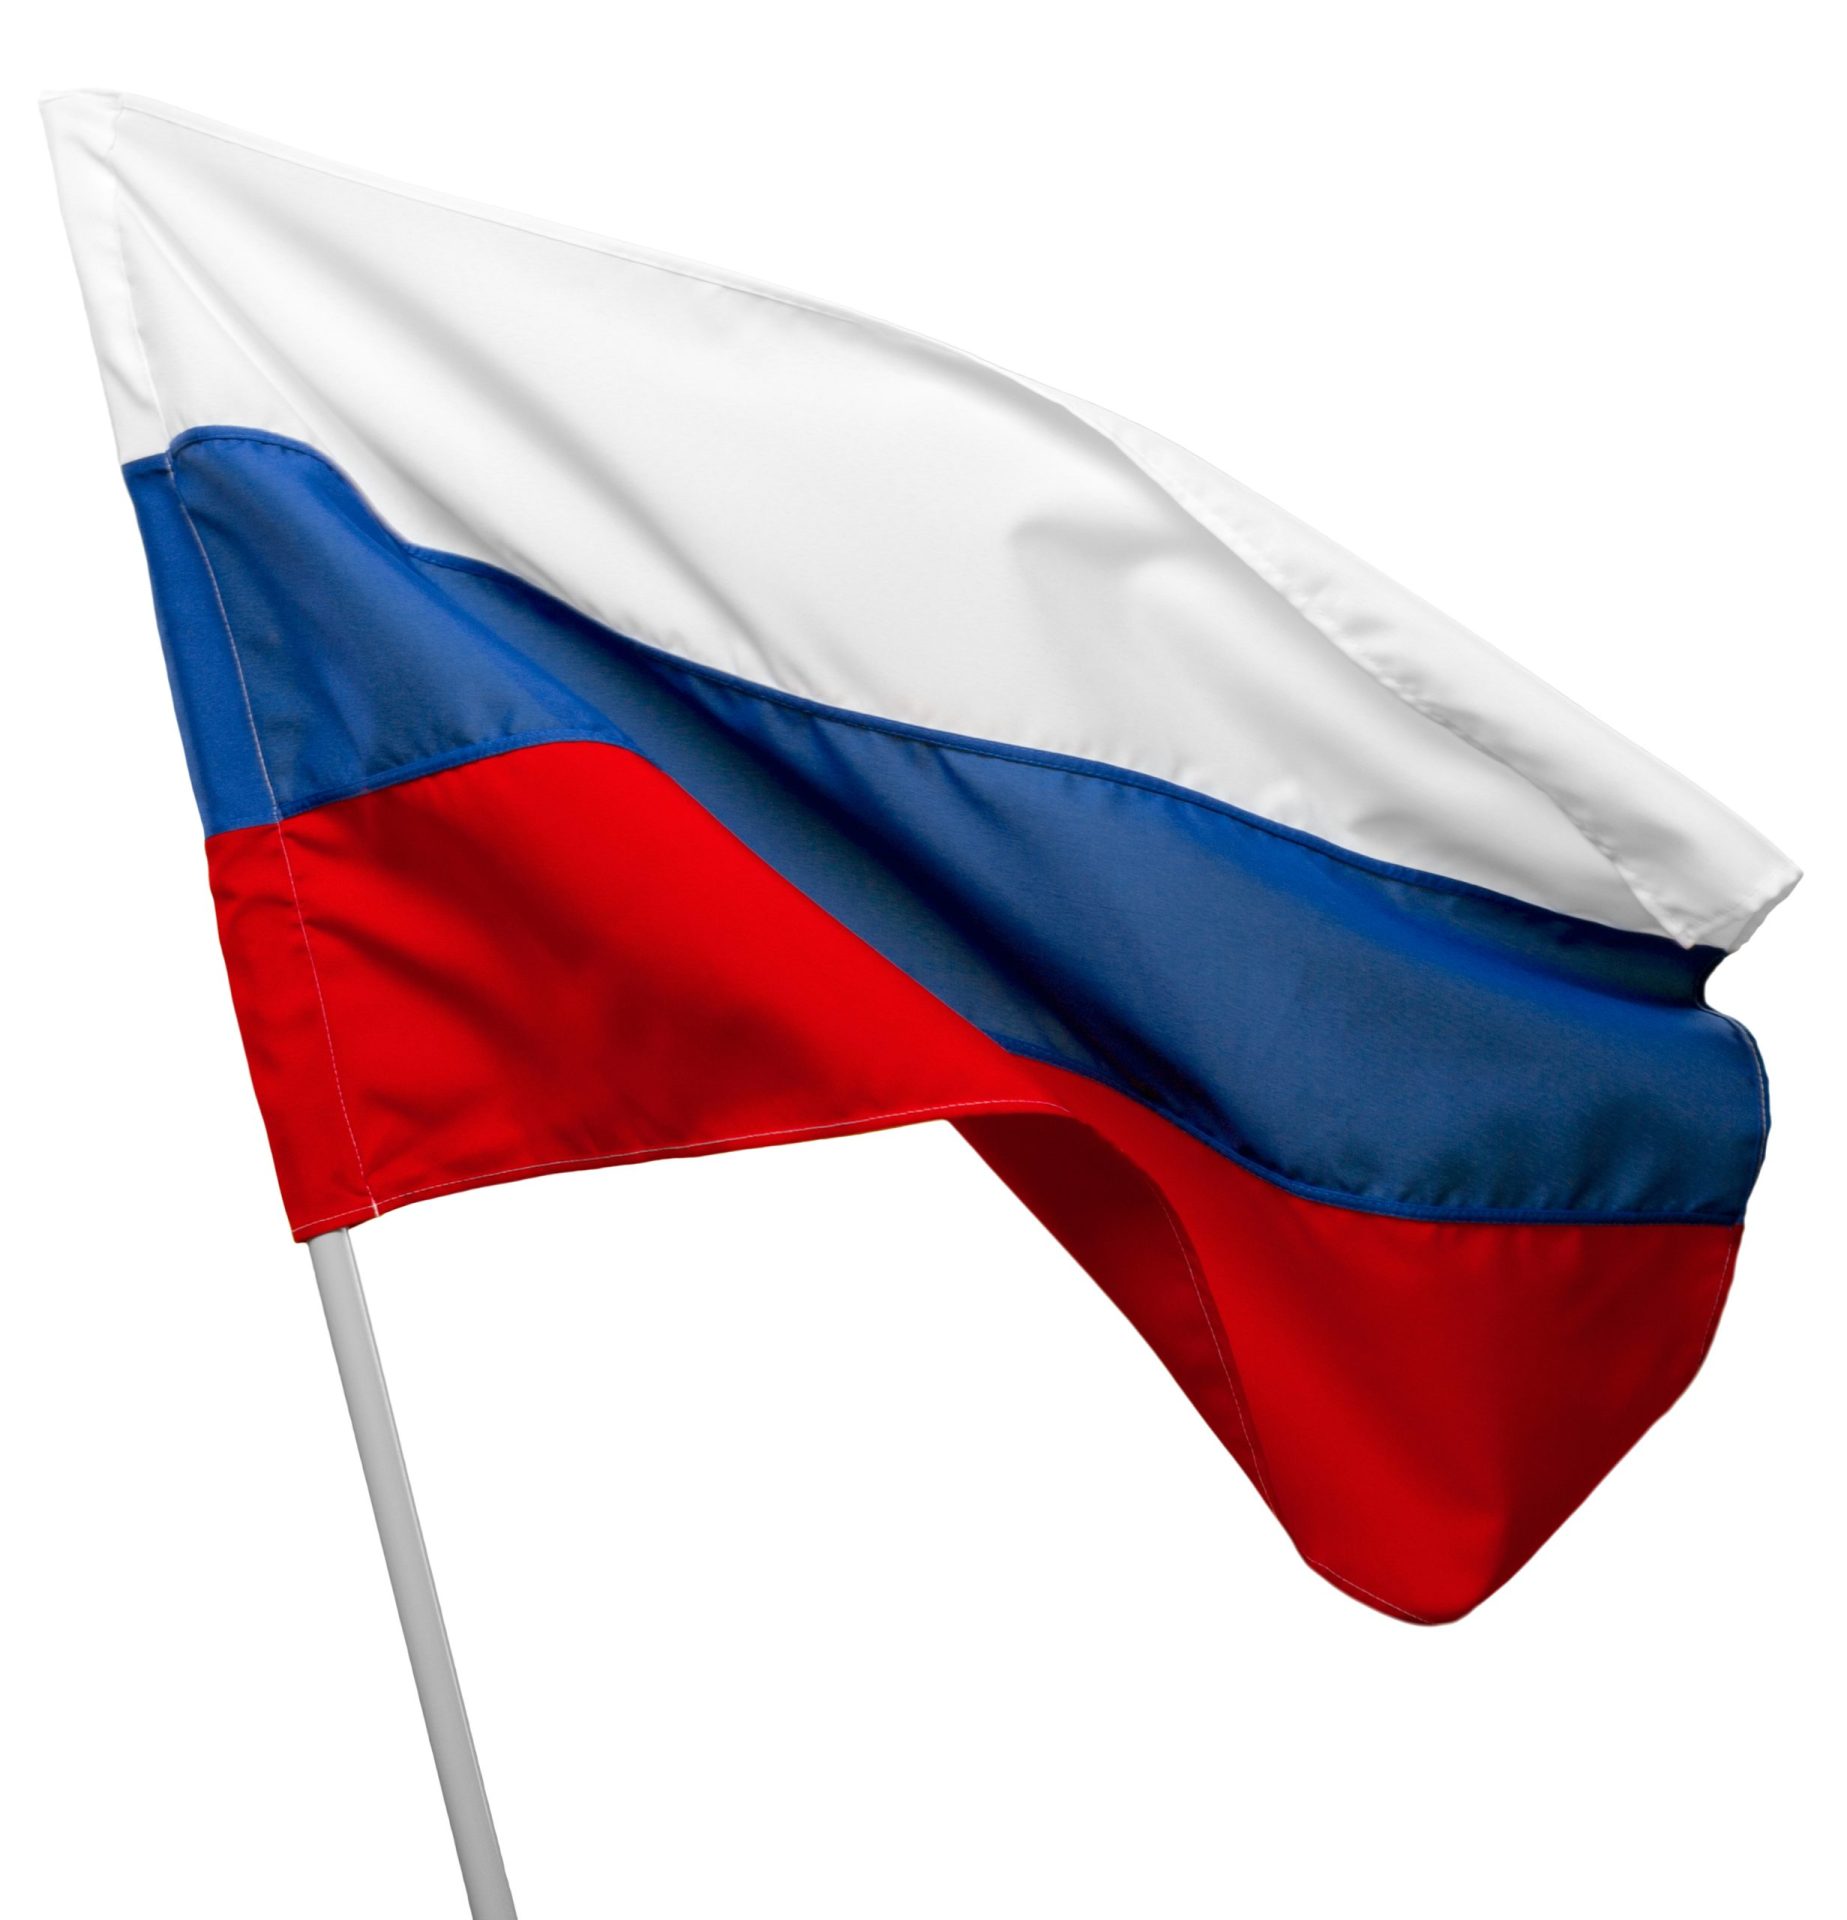 Rússia. Três centros comerciais evacuados devido a ameaça de bomba